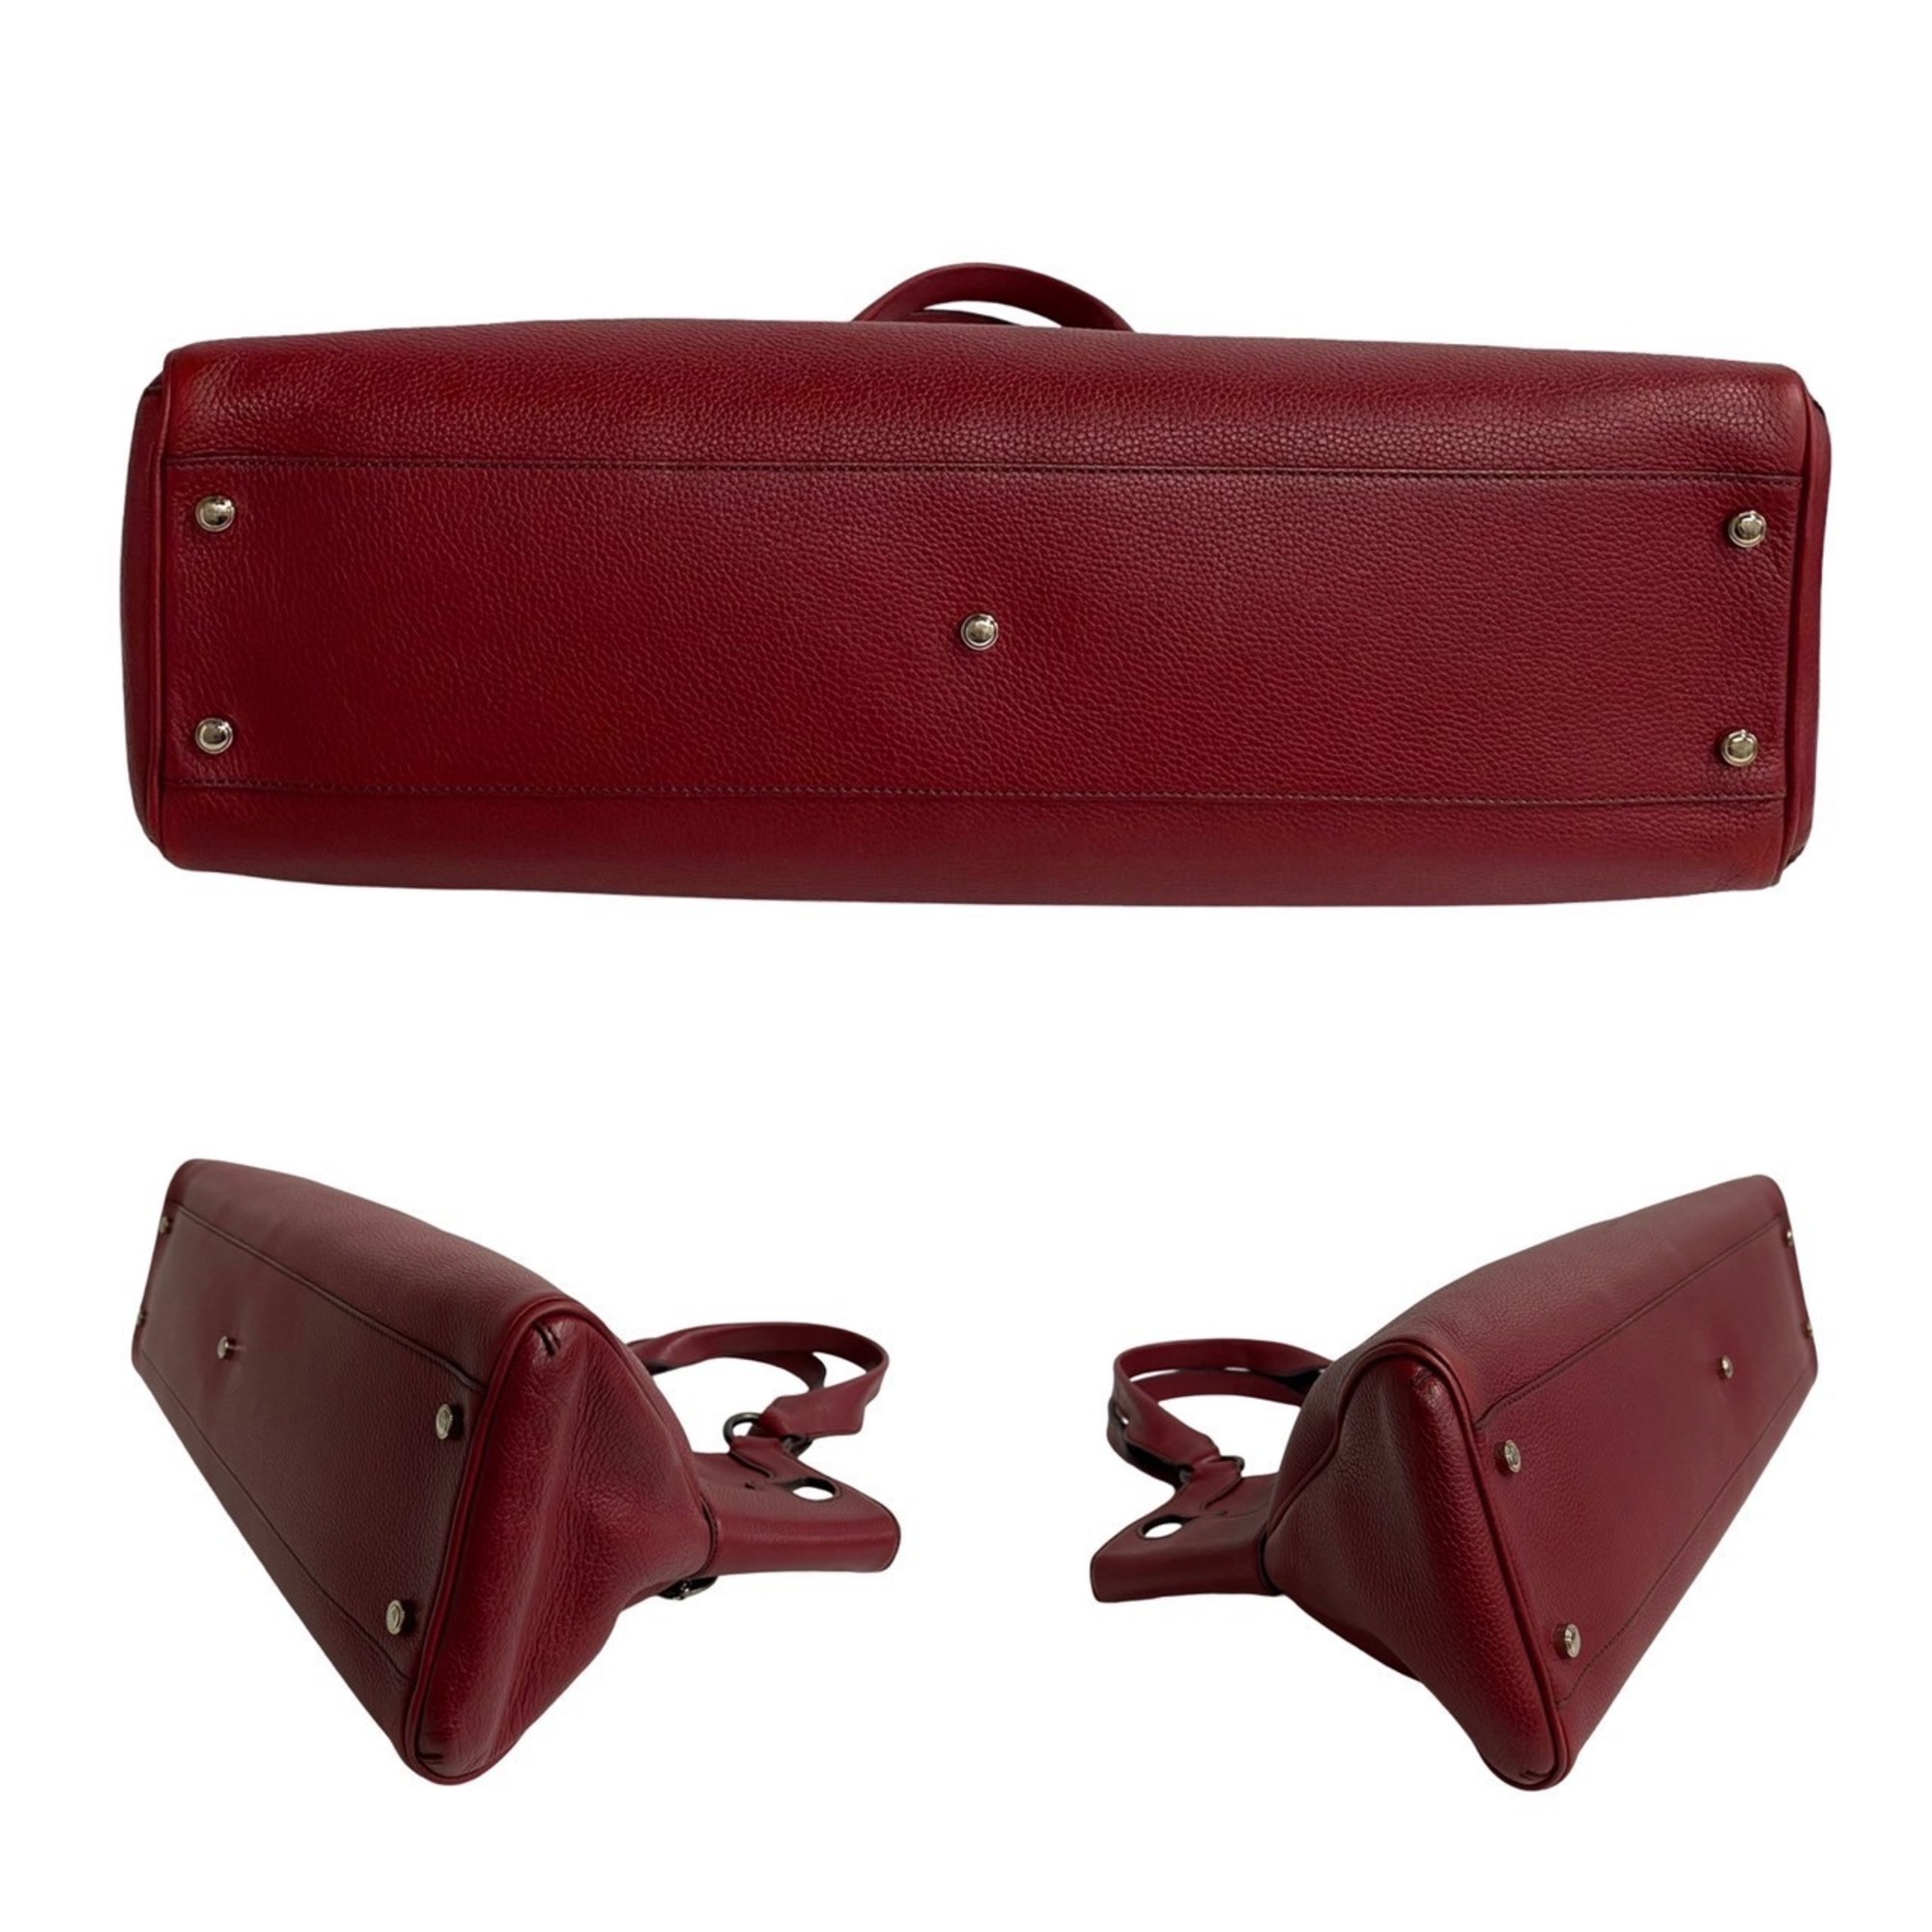 CARTIER Marcello Must Line Leather Handbag Tote Bag Bordeaux 30115